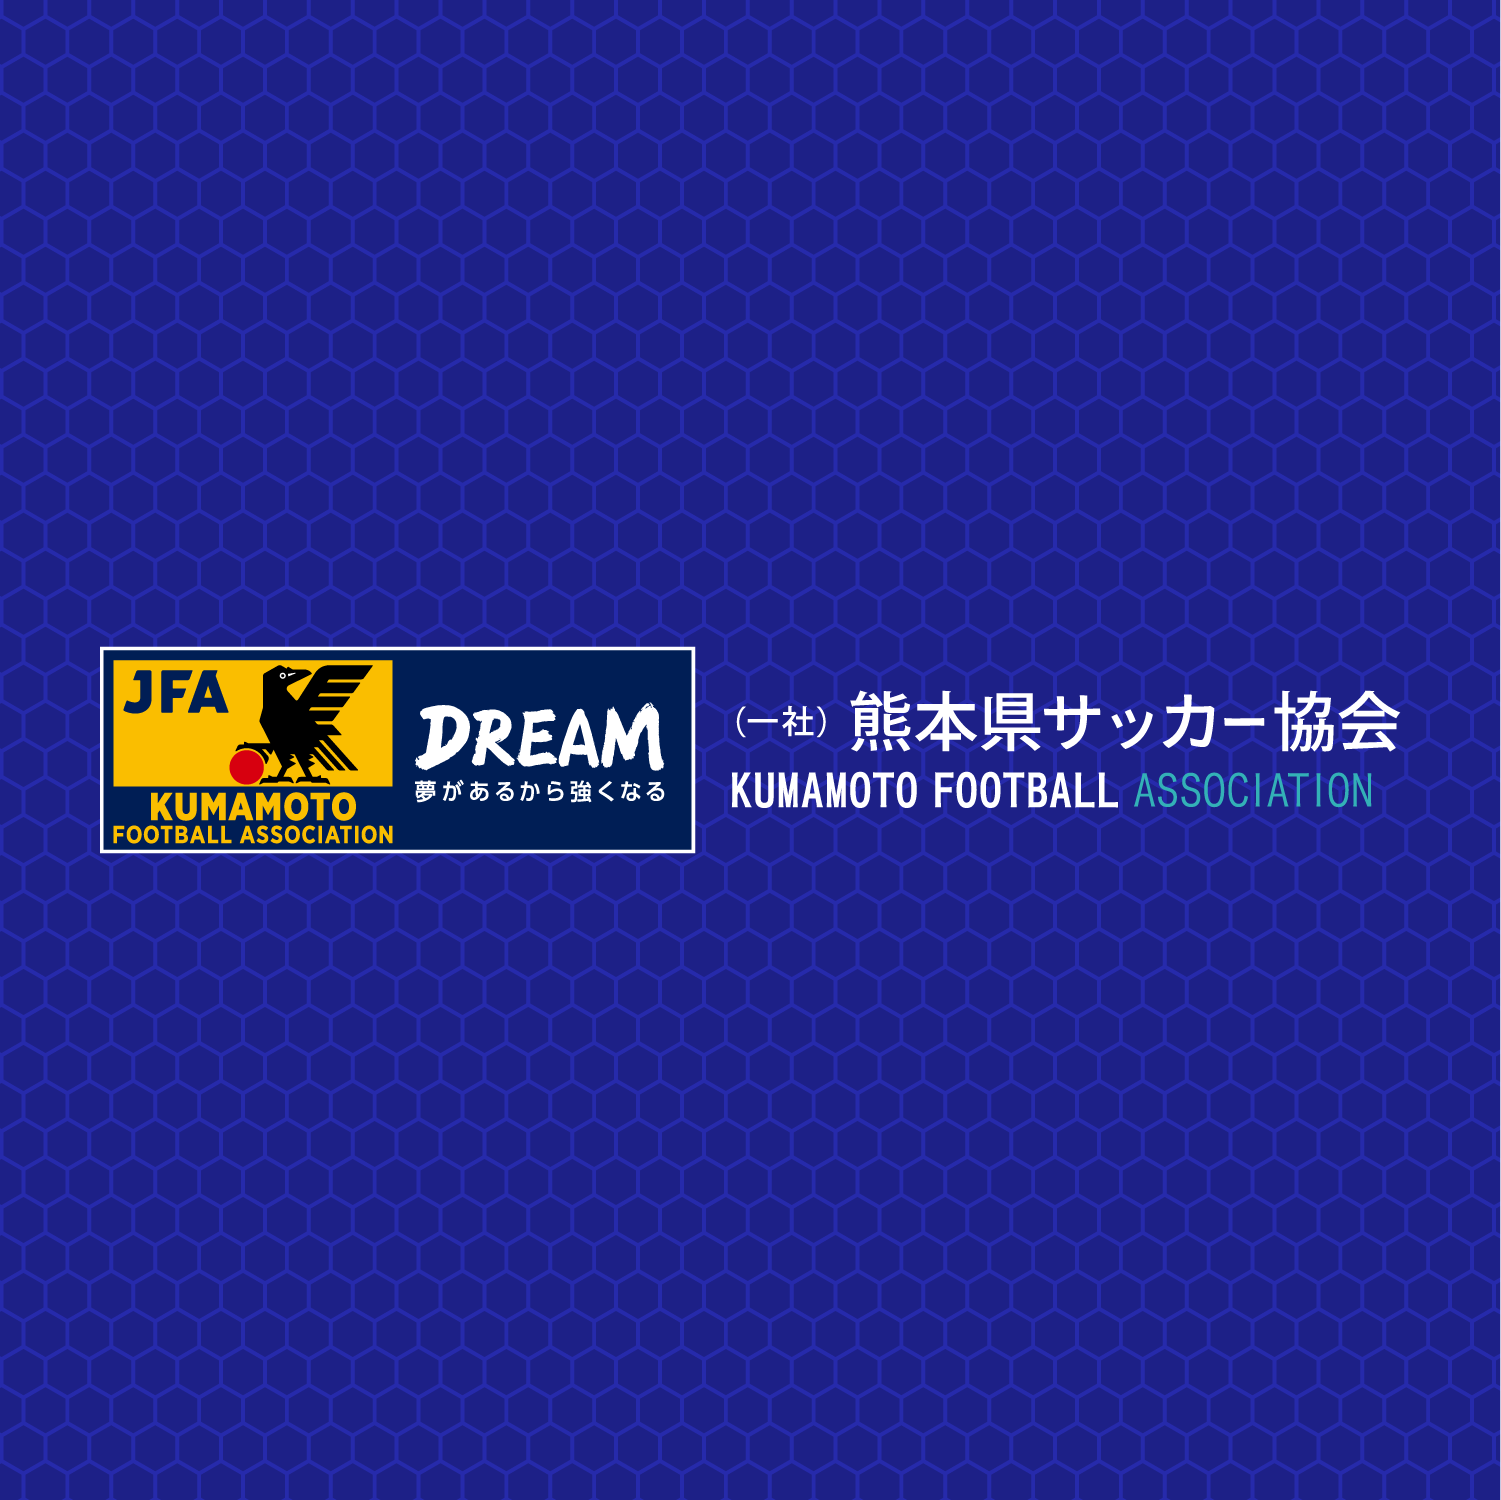 井川ユースダイレクターがなでしこジャパンの選手に熊本地震を語る トピックス